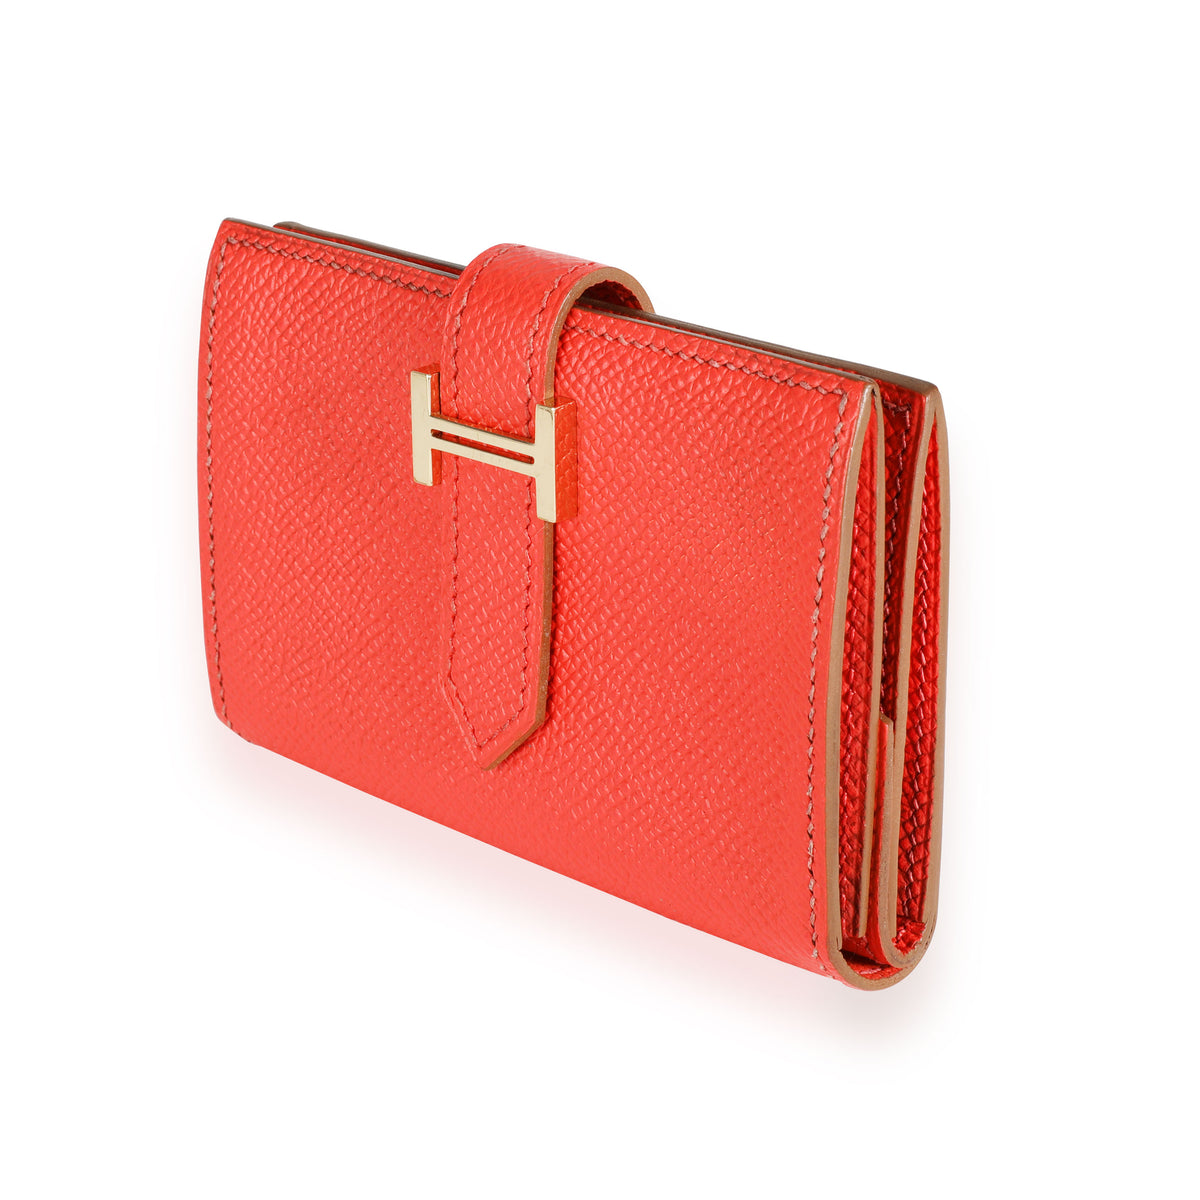 Hermès Rose Jaipur Epsom Mini Bearn Wallet GHW